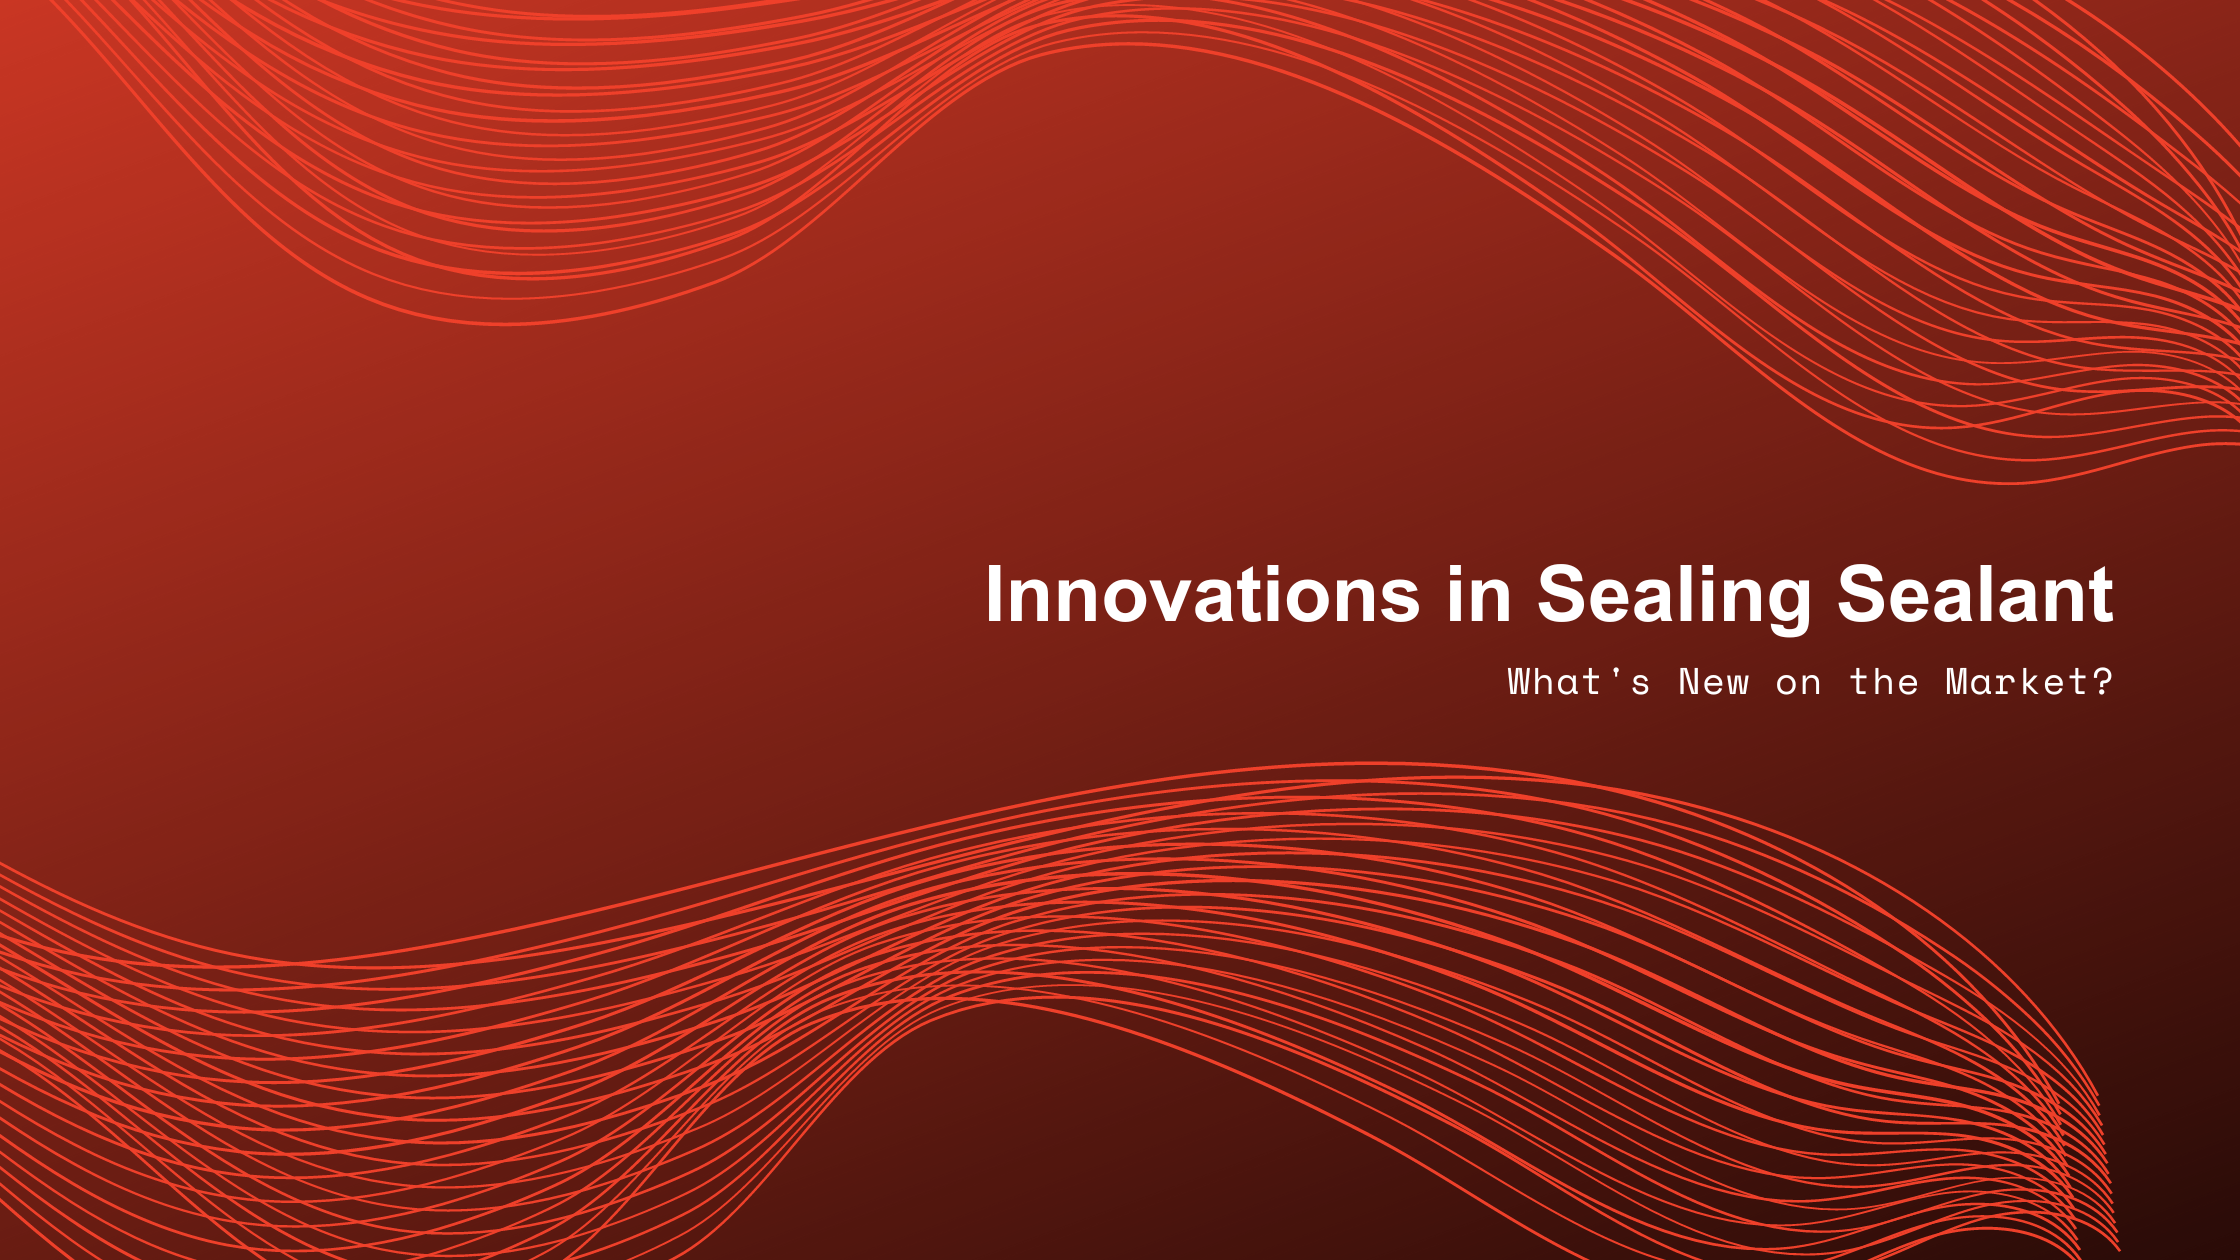 Sealing Sealant